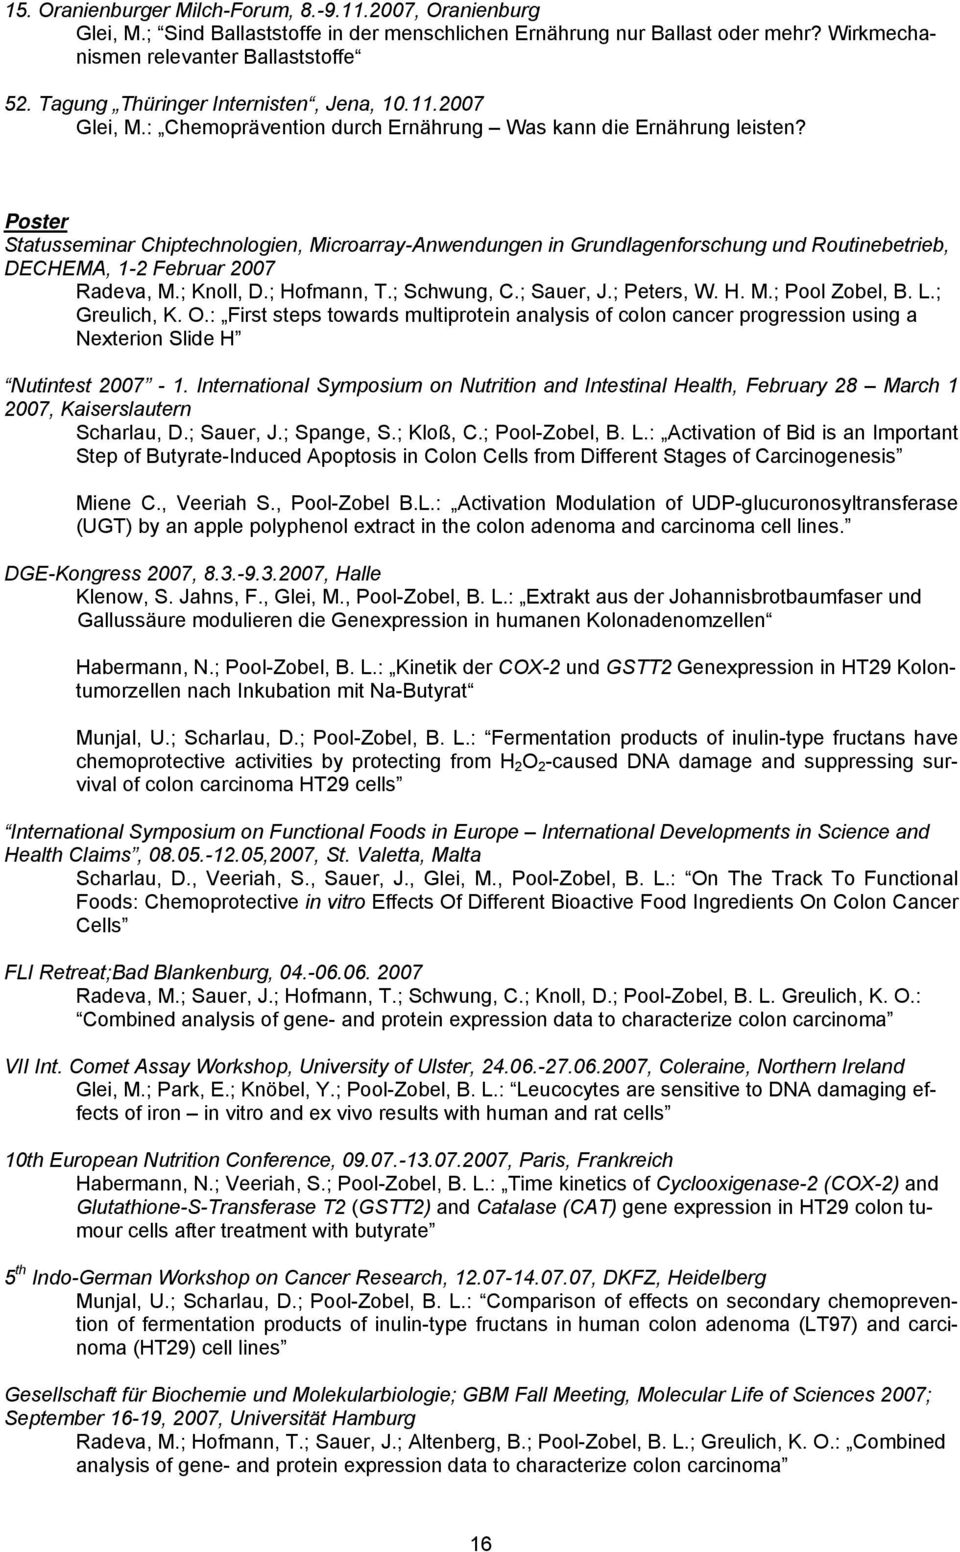 Poster Statusseminar Chiptechnologien, Microarray-Anwendungen in Grundlagenforschung und Routinebetrieb, DECHEMA, 1-2 Februar 2007 Radeva, M.; Knoll, D.; Hofmann, T.; Schwung, C.; Sauer, J.